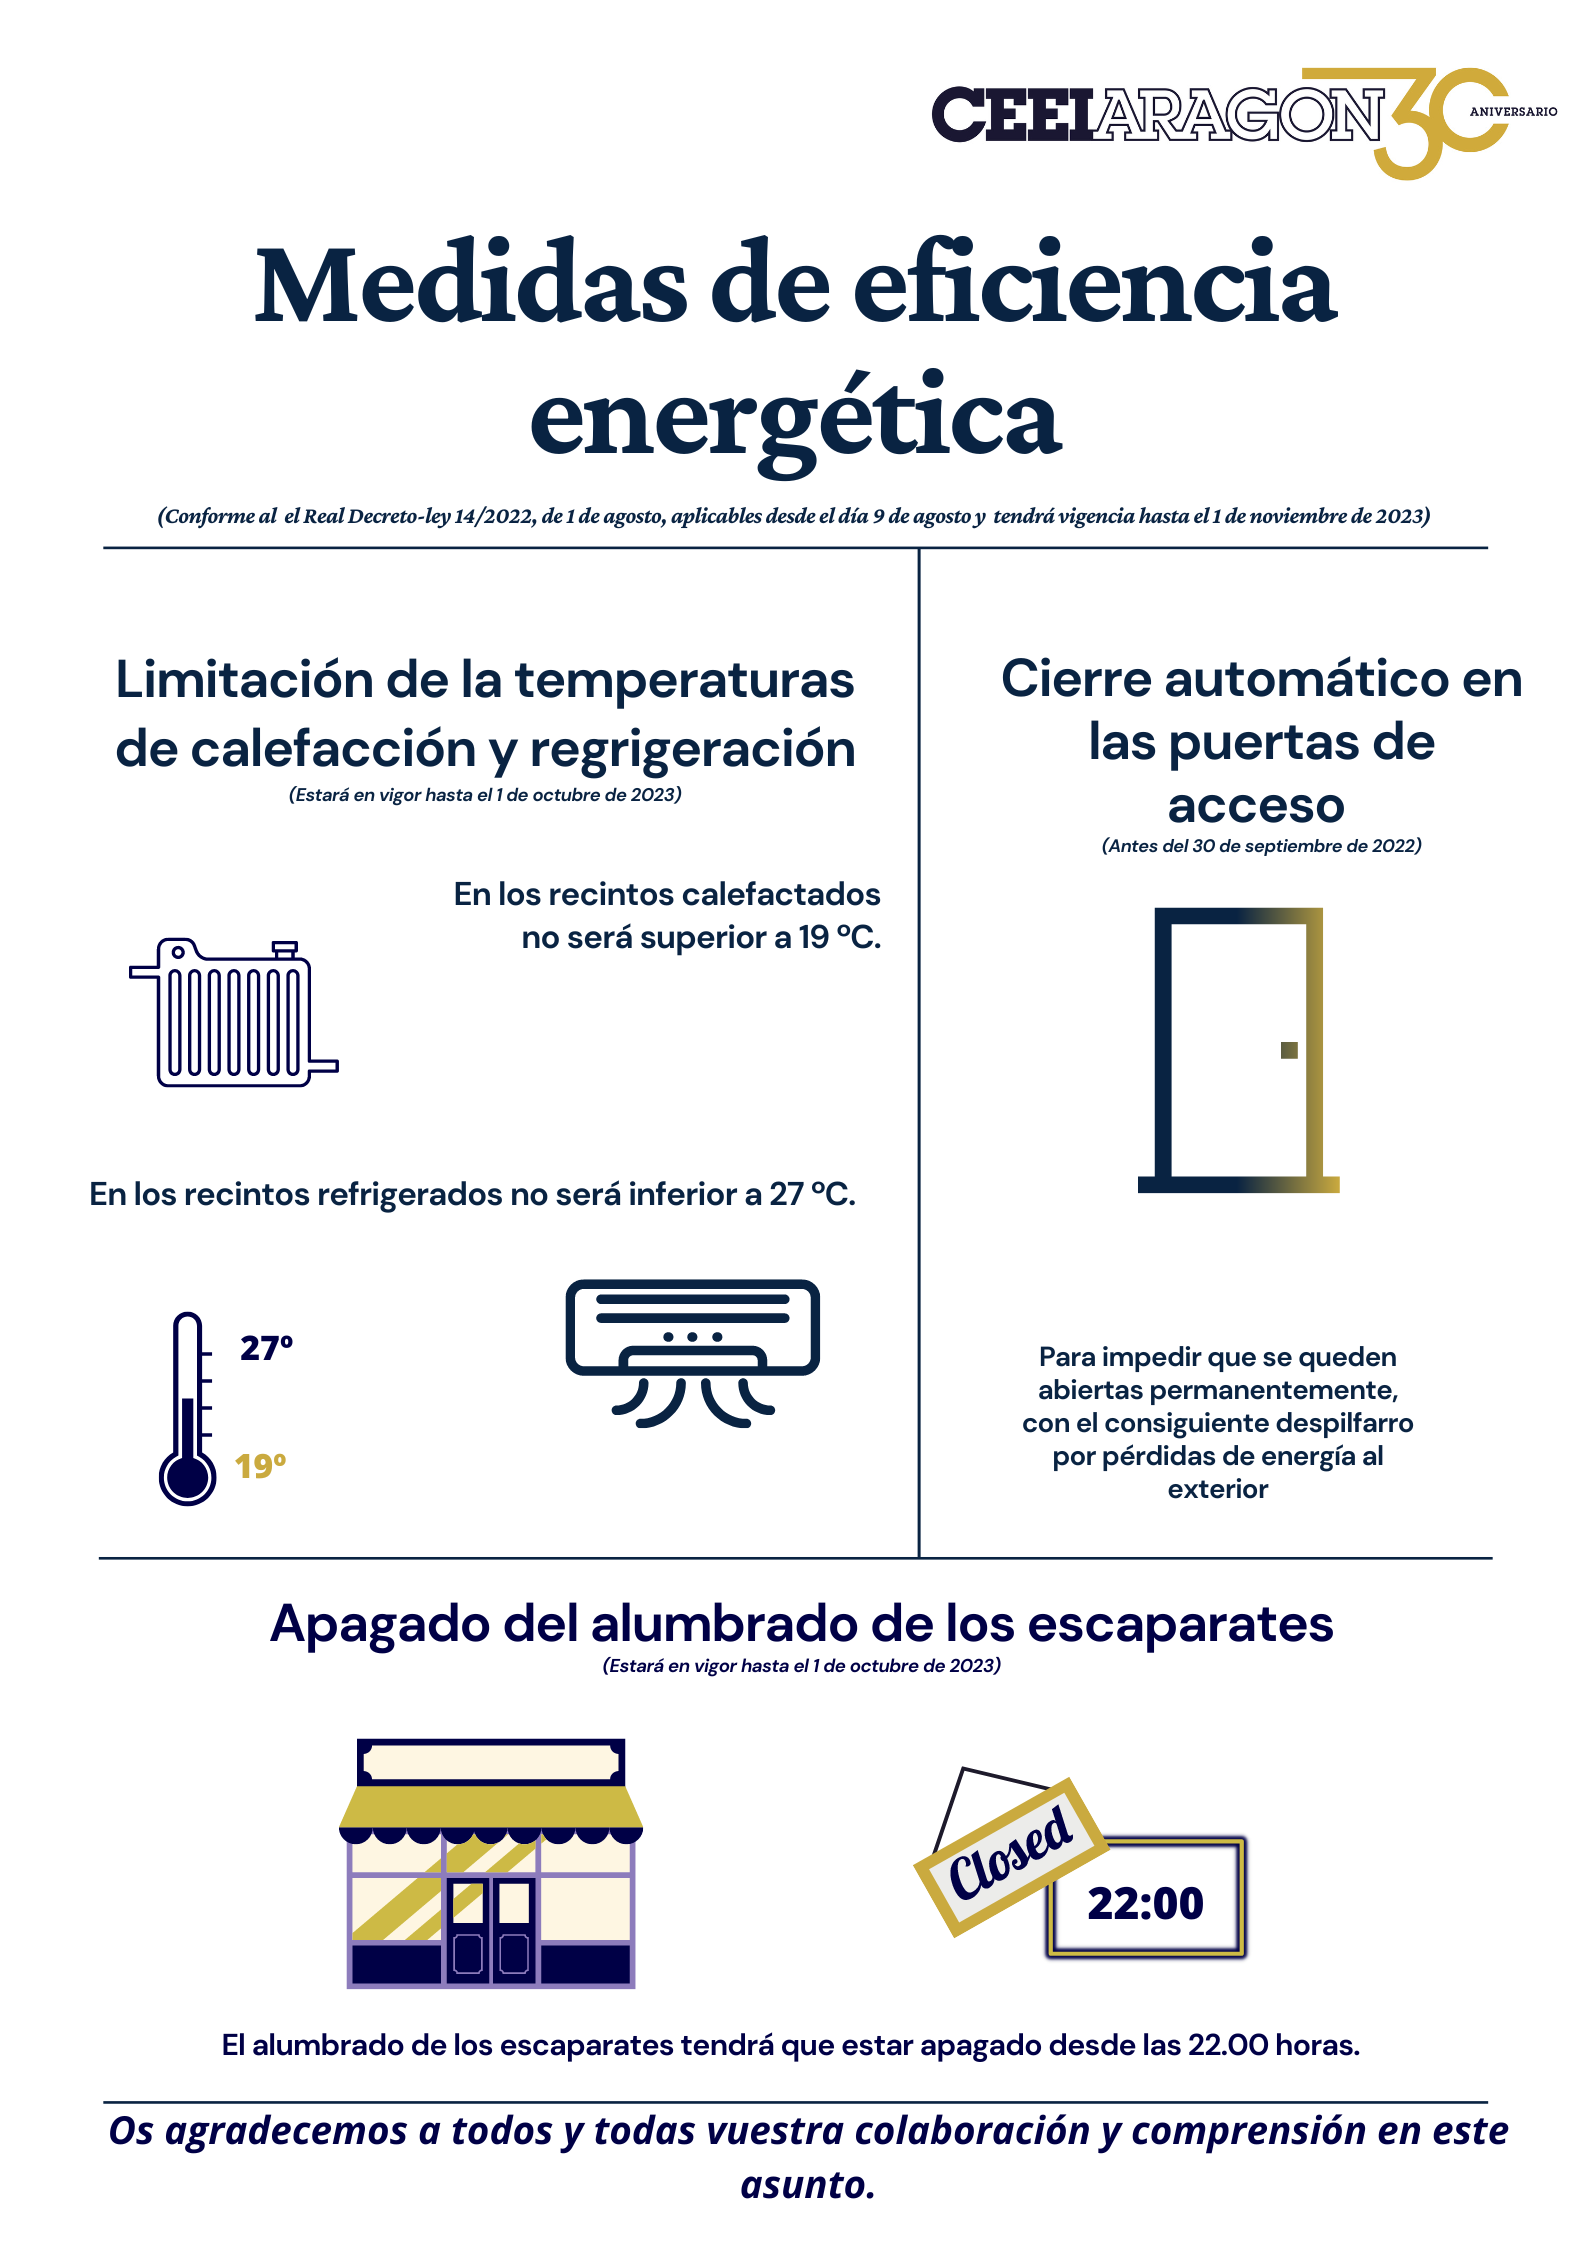 CEEIARAGON se suma al conjunto de medidas de ahorro, eficiencia energética y de reducción de la dependencia energética del gas natural aprobadas por el Gobierno de España